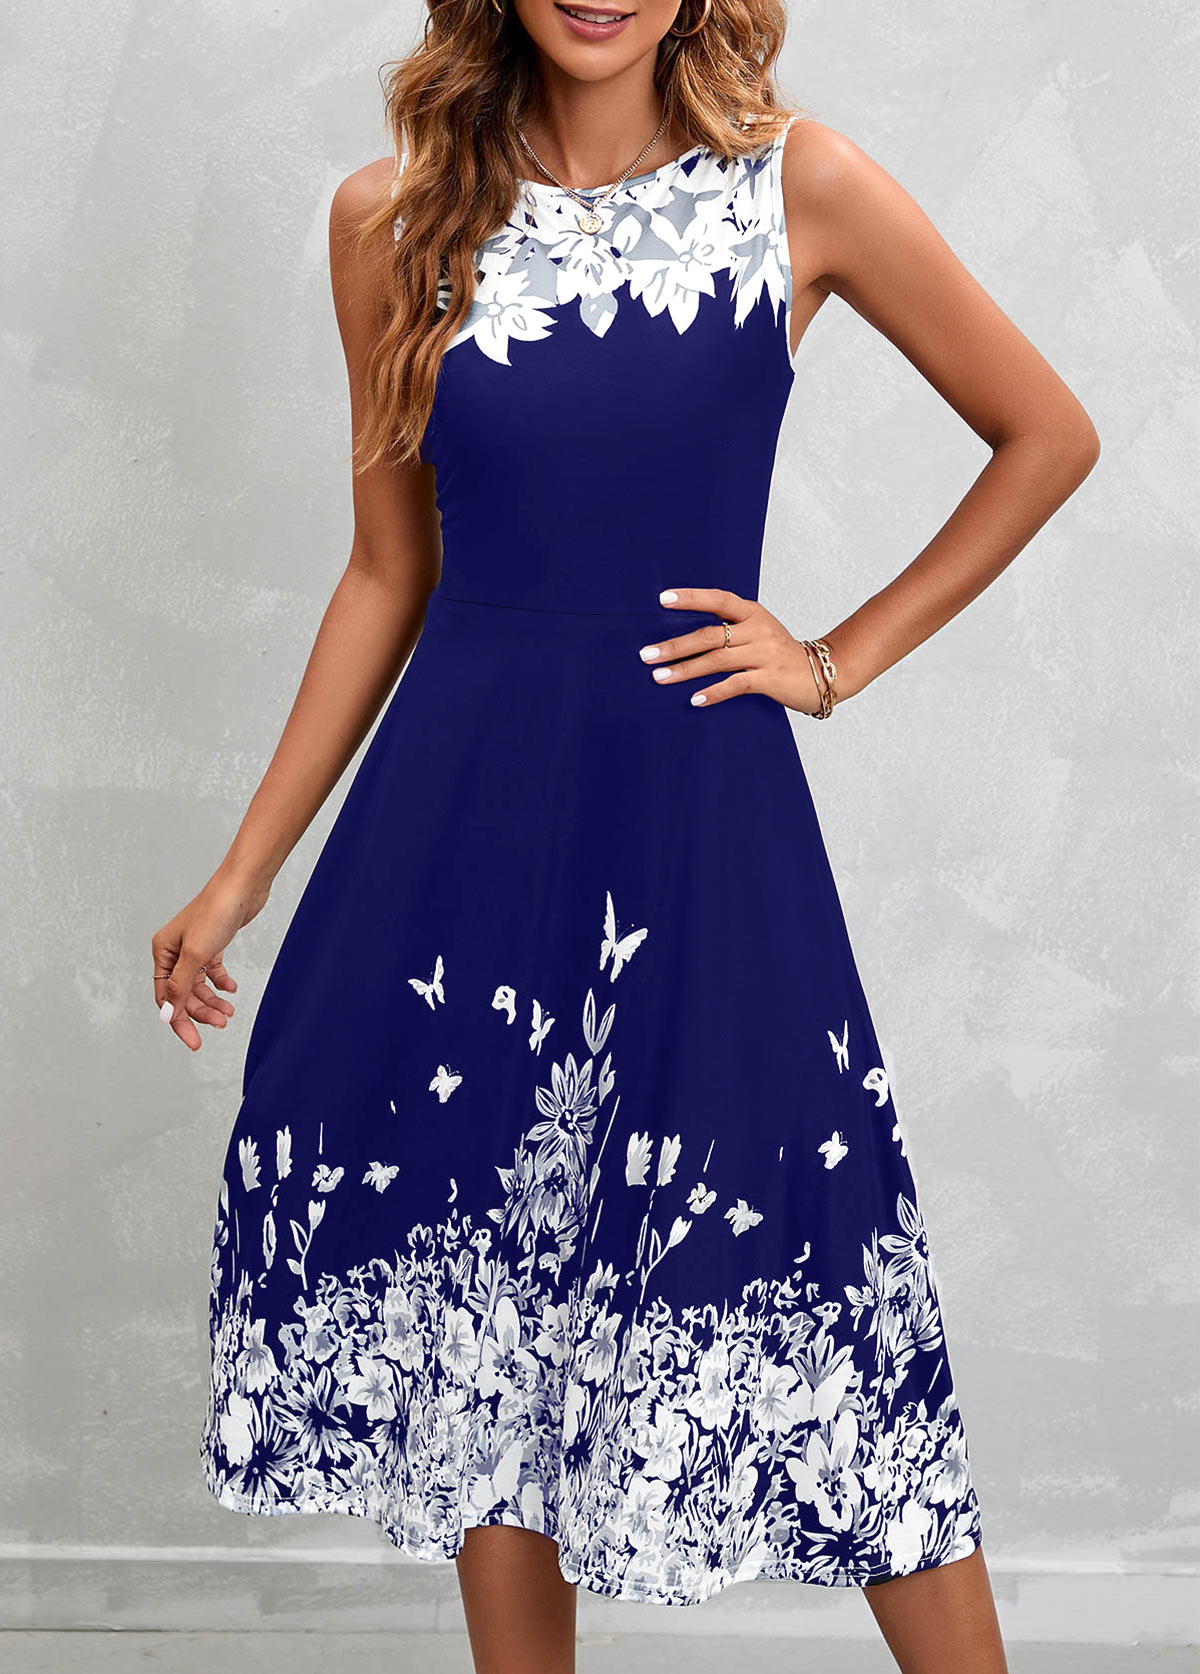 Floral Print Navy Sleeveless High Waist Dress